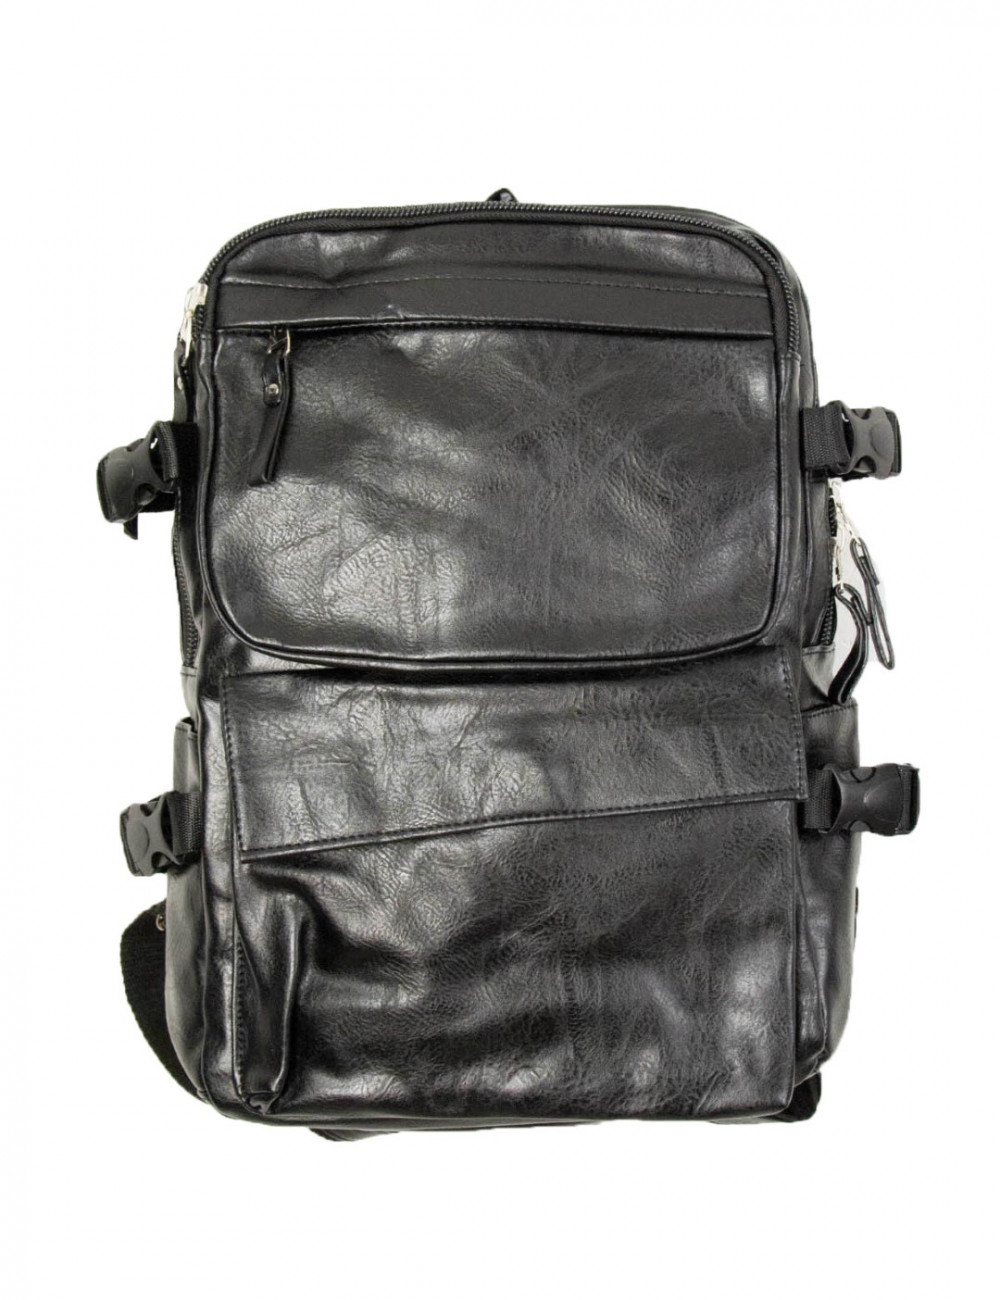 Ανδρικο μαύρο Back Pack δερματίνη με εξωτερικές τσέπες DR2194